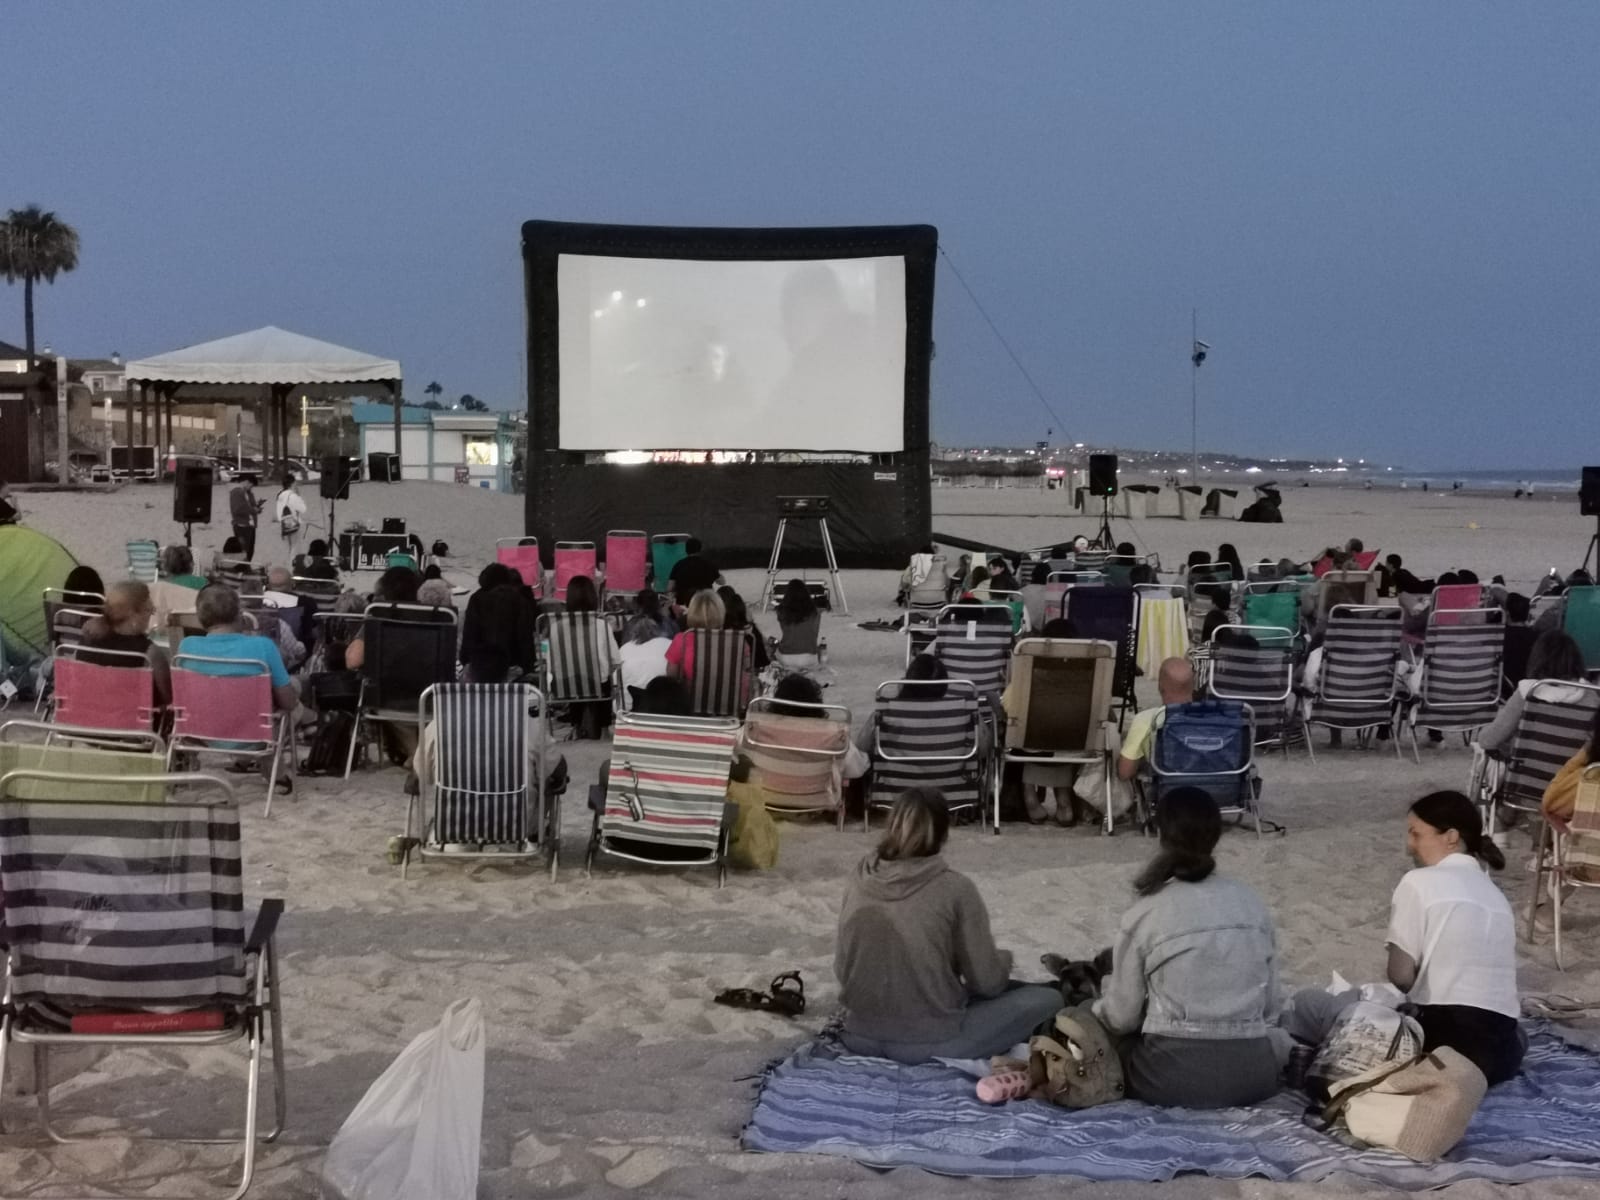 Cine de verano en la playa de La Barrosa, en Chiclana.